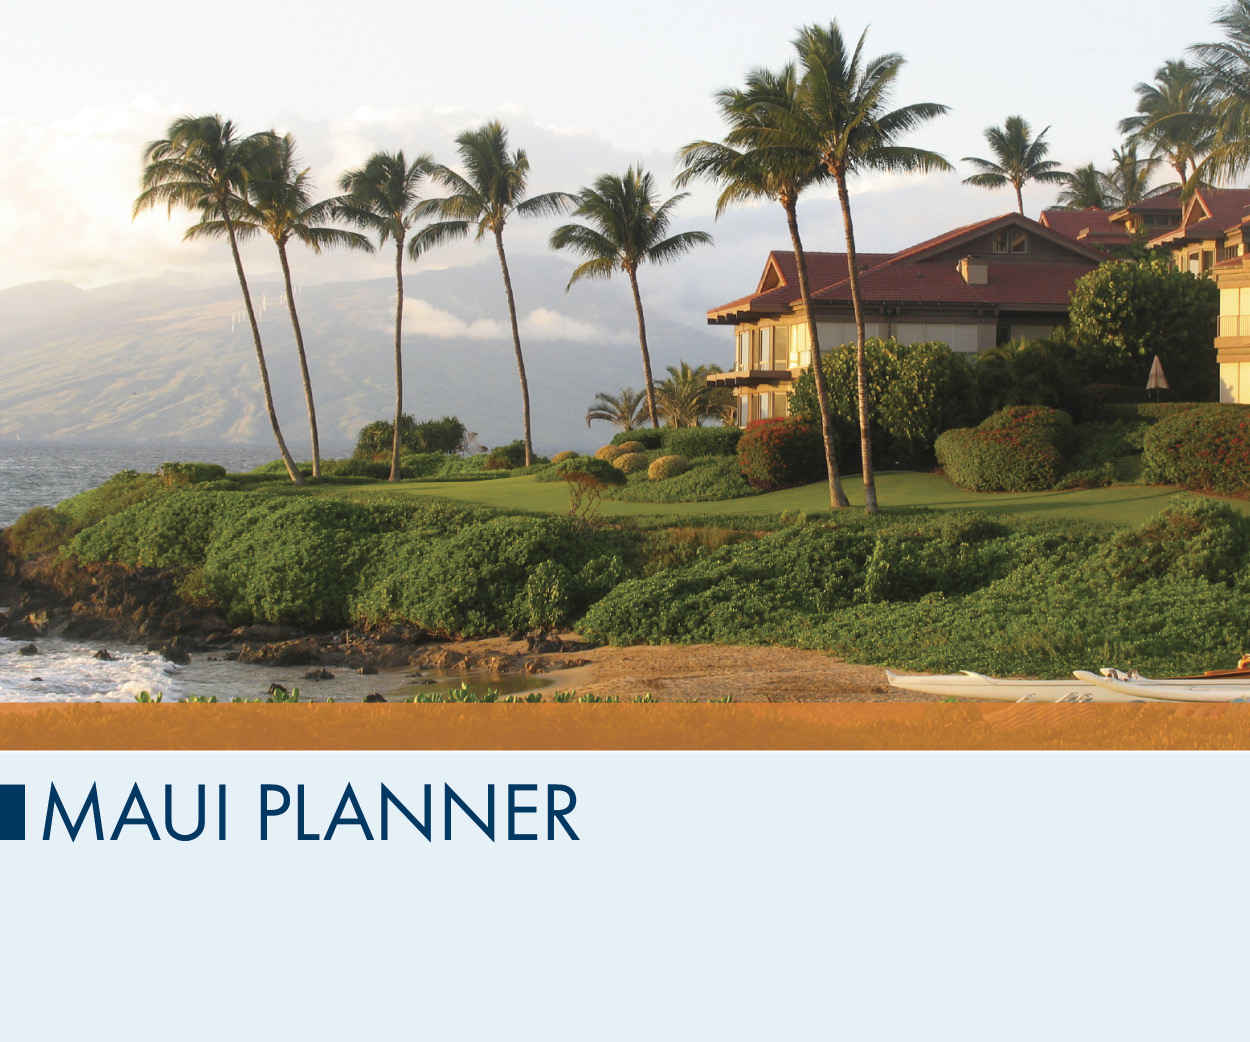 Maui Planner